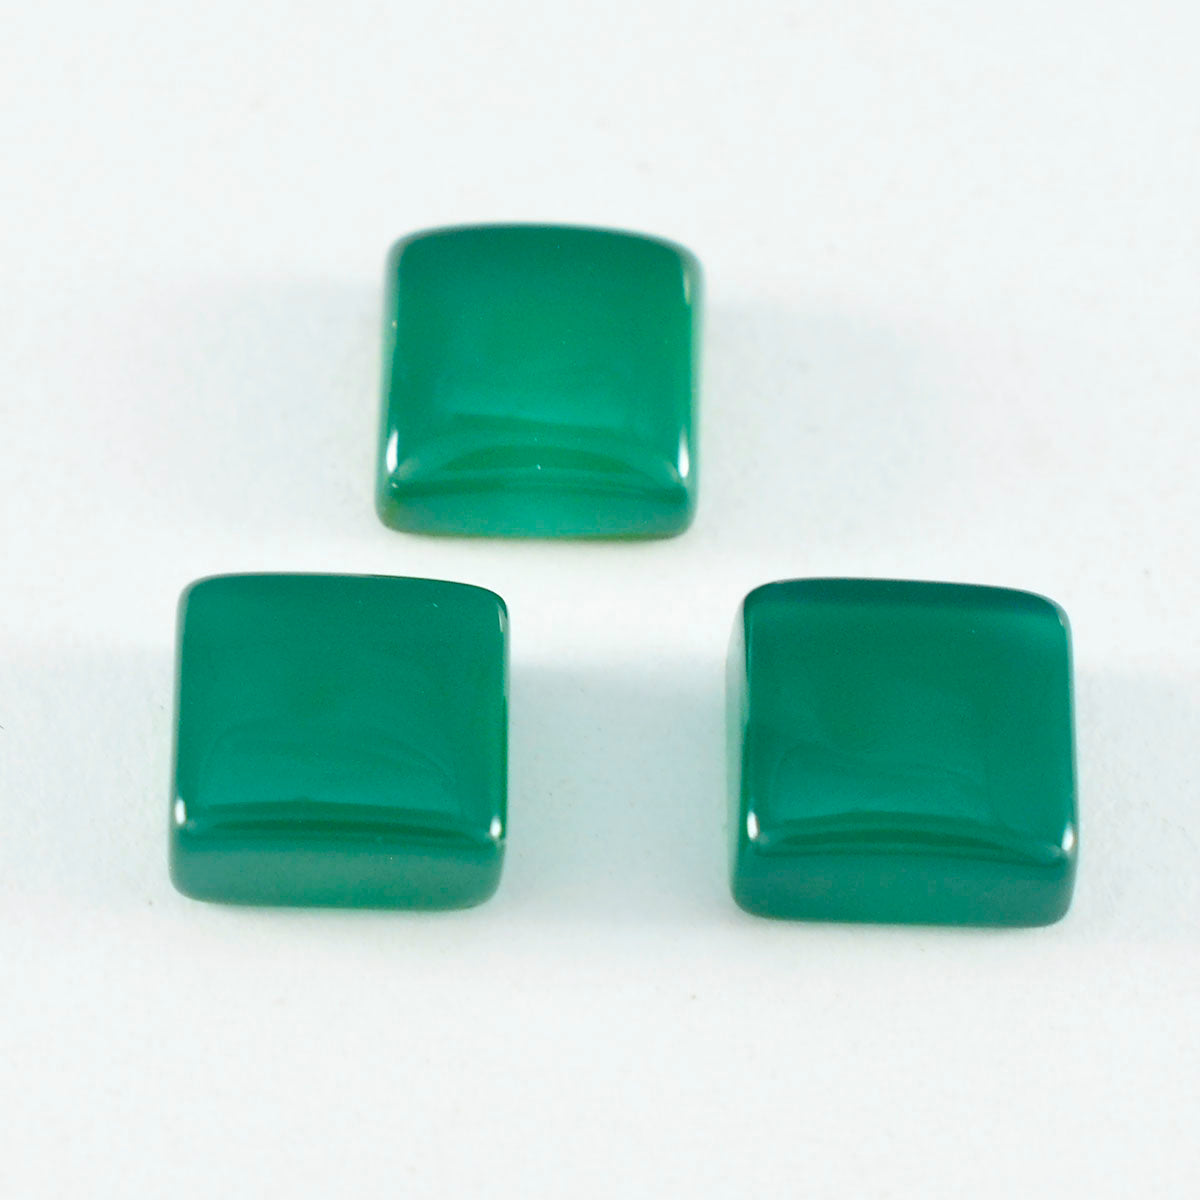 Riyogems 1PC groene onyx cabochon 13x13 mm vierkante vorm mooie kwaliteit losse edelsteen